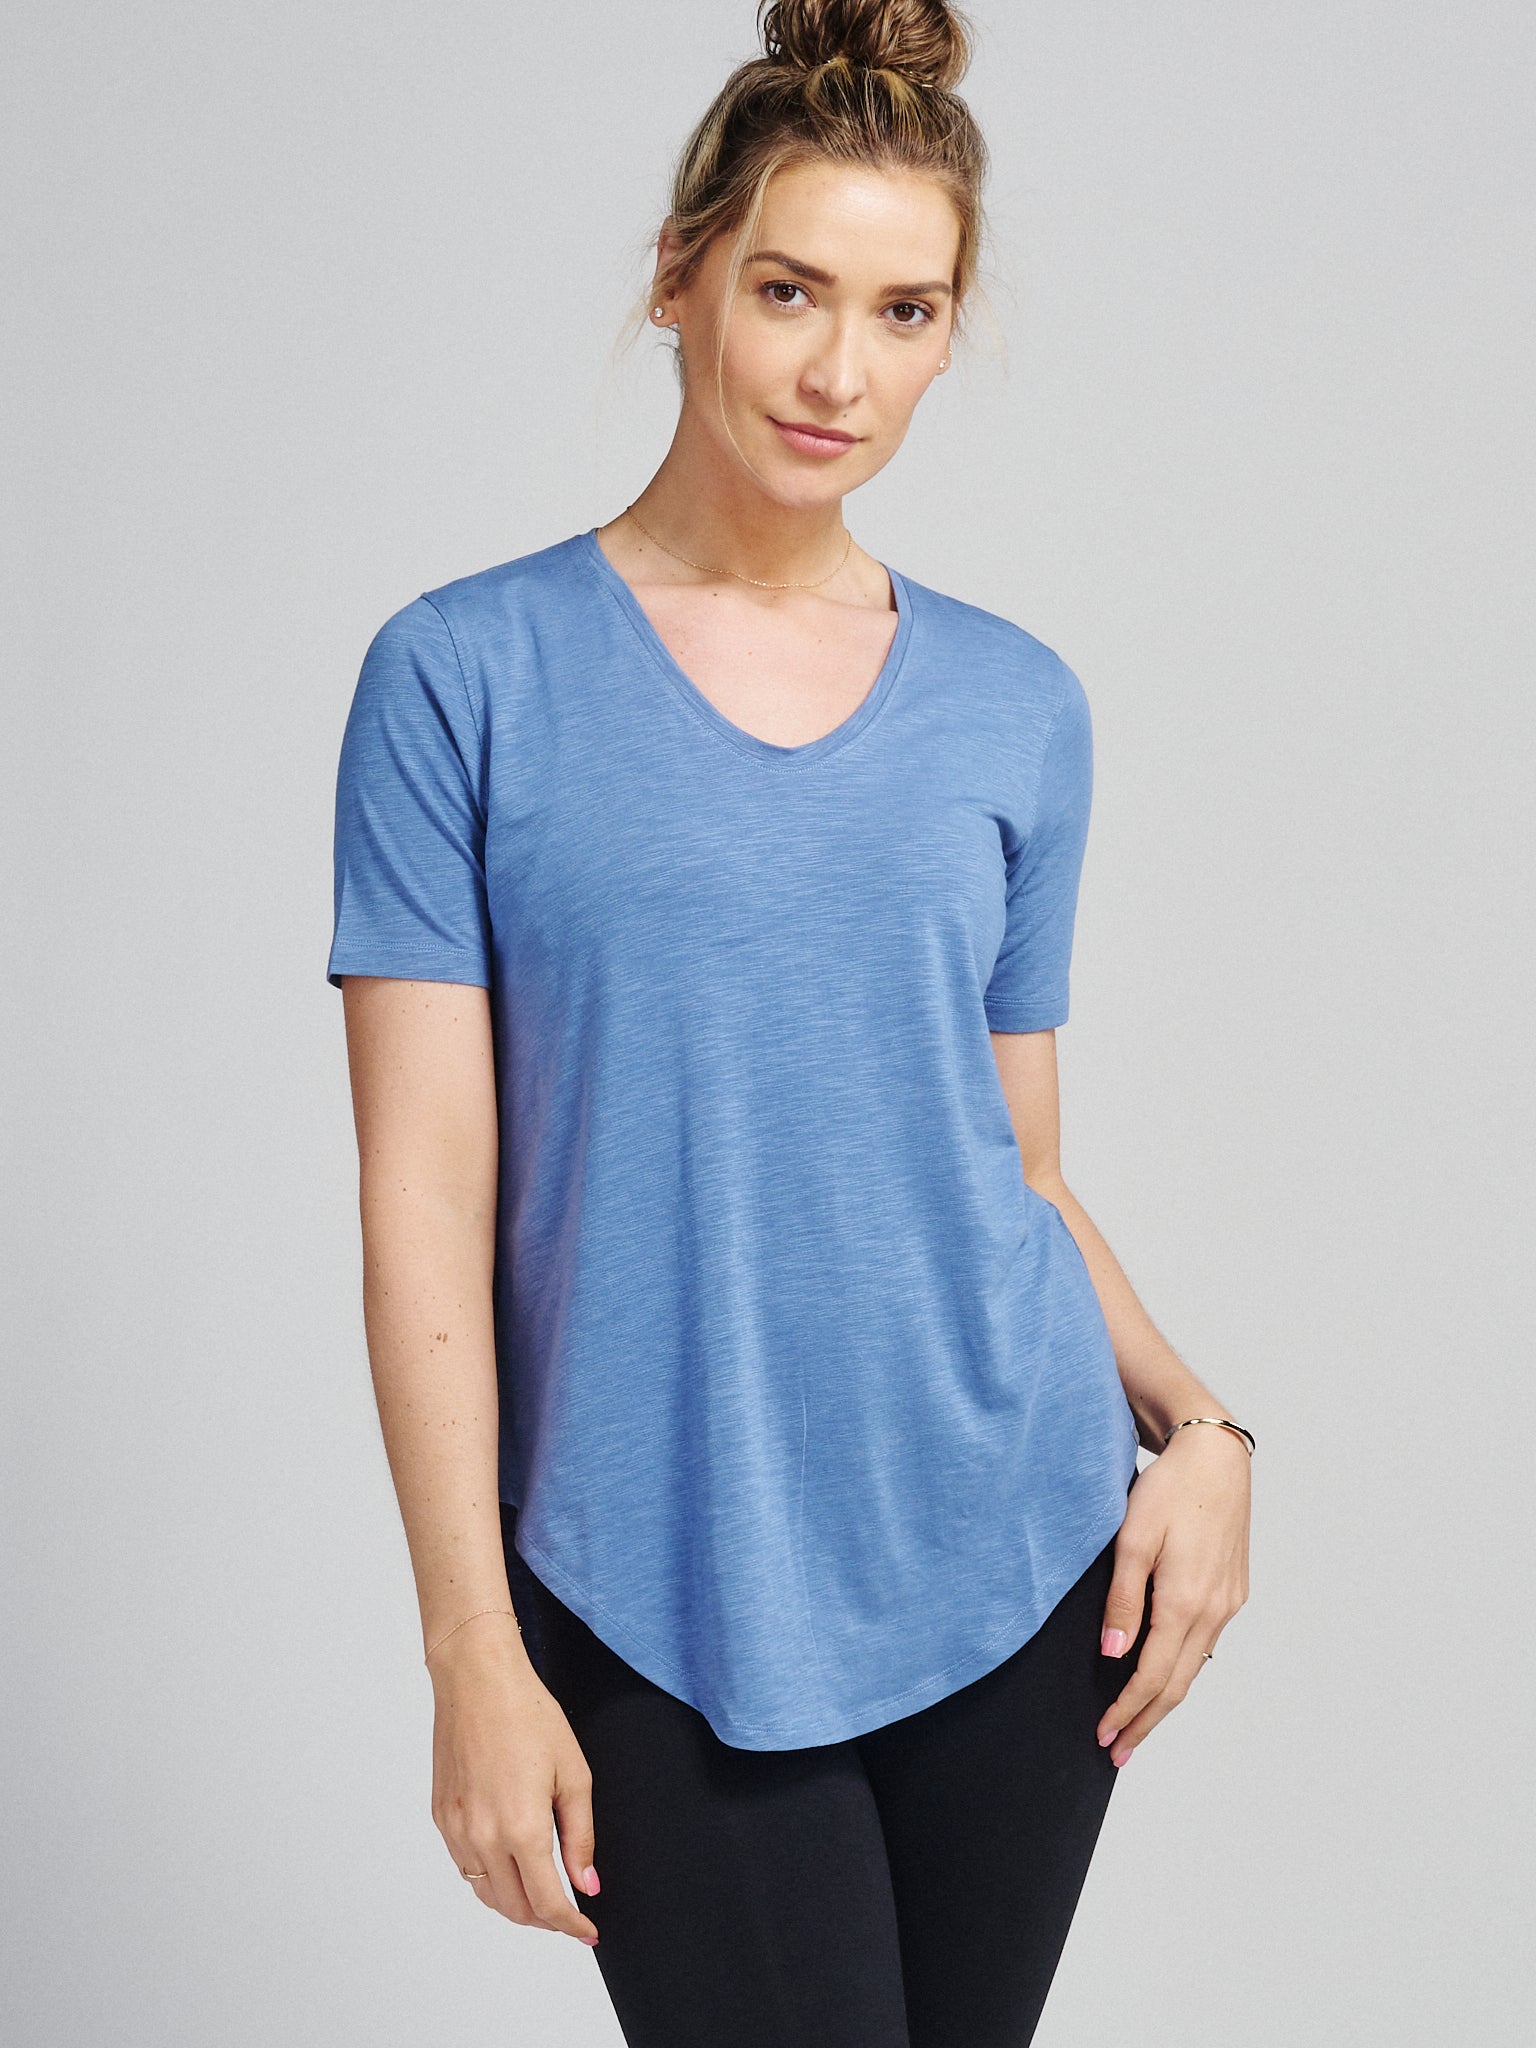 CTEEGC Plain T Shirts for Women,Casual Lightweight Flowy T-Shirt